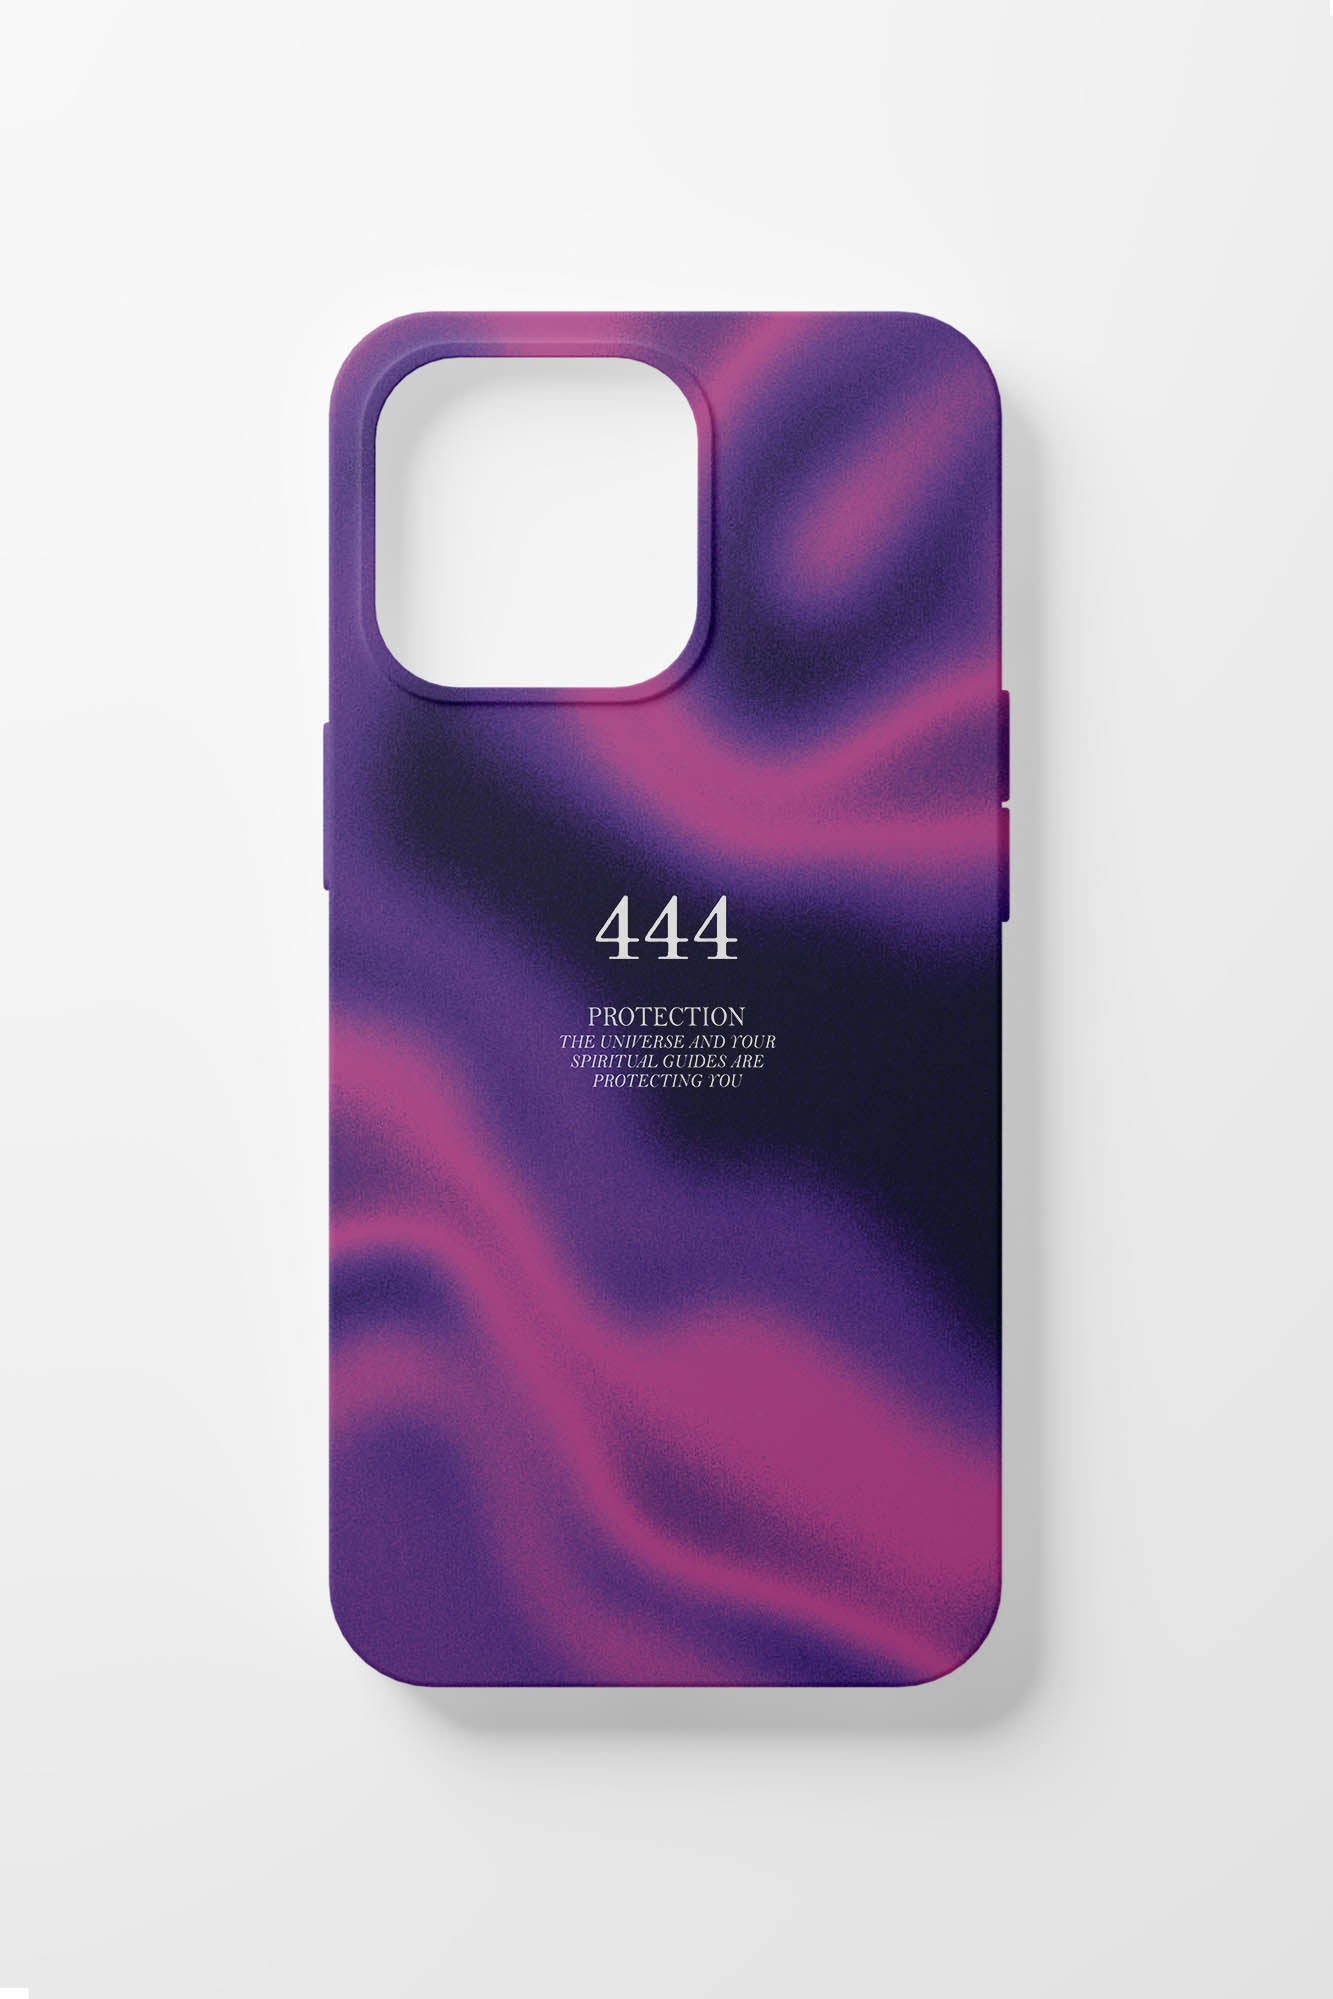 444 iPhone Case